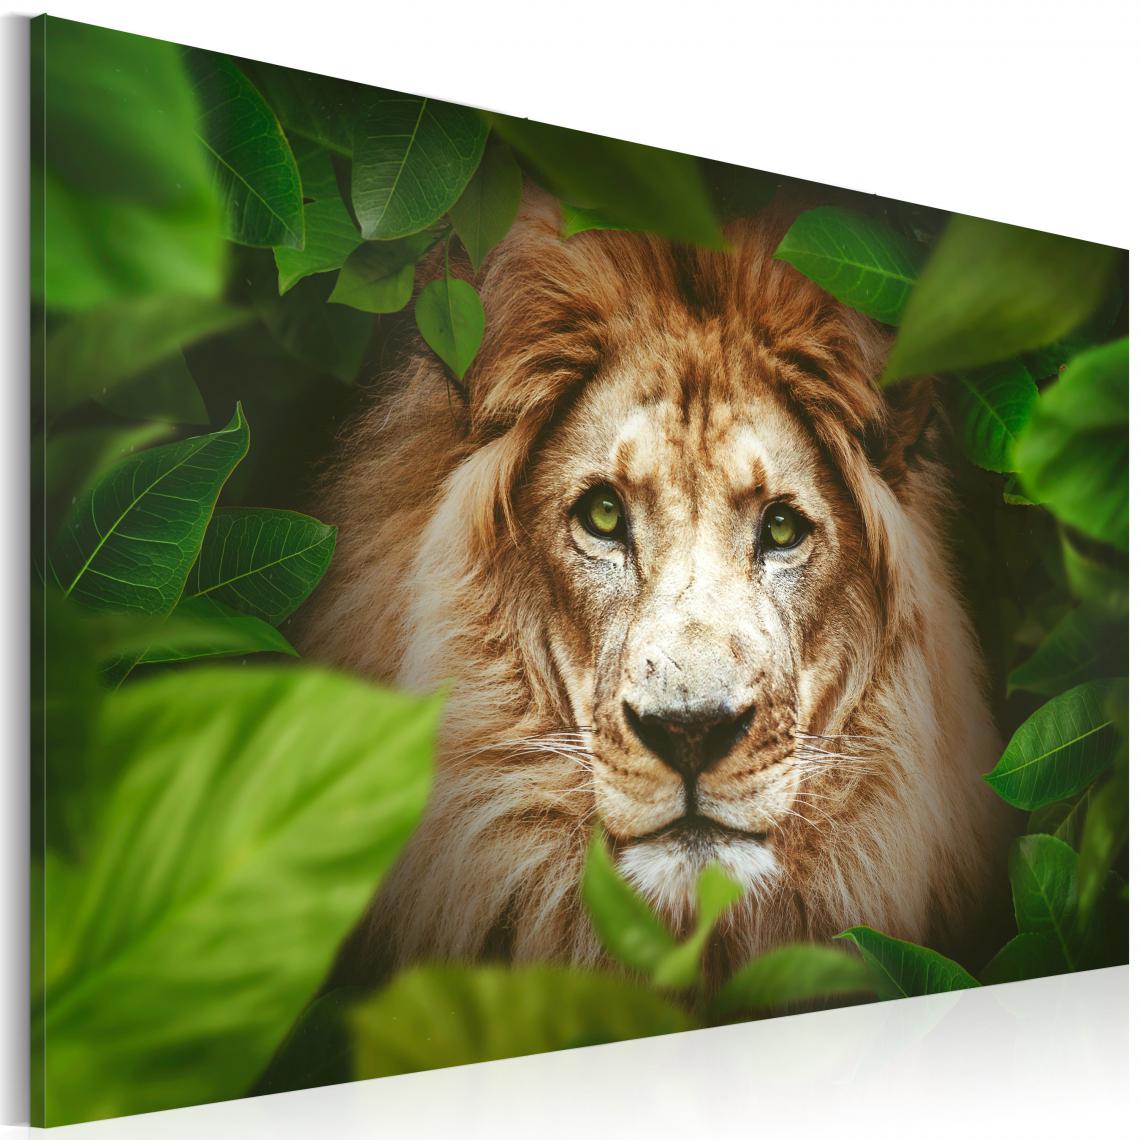 Decoshop26 - Tableau sur toile décoration murale image imprimée cadre en bois à suspendre Les yeux de la jungle 120x80 cm 11_0002246 - Tableaux, peintures